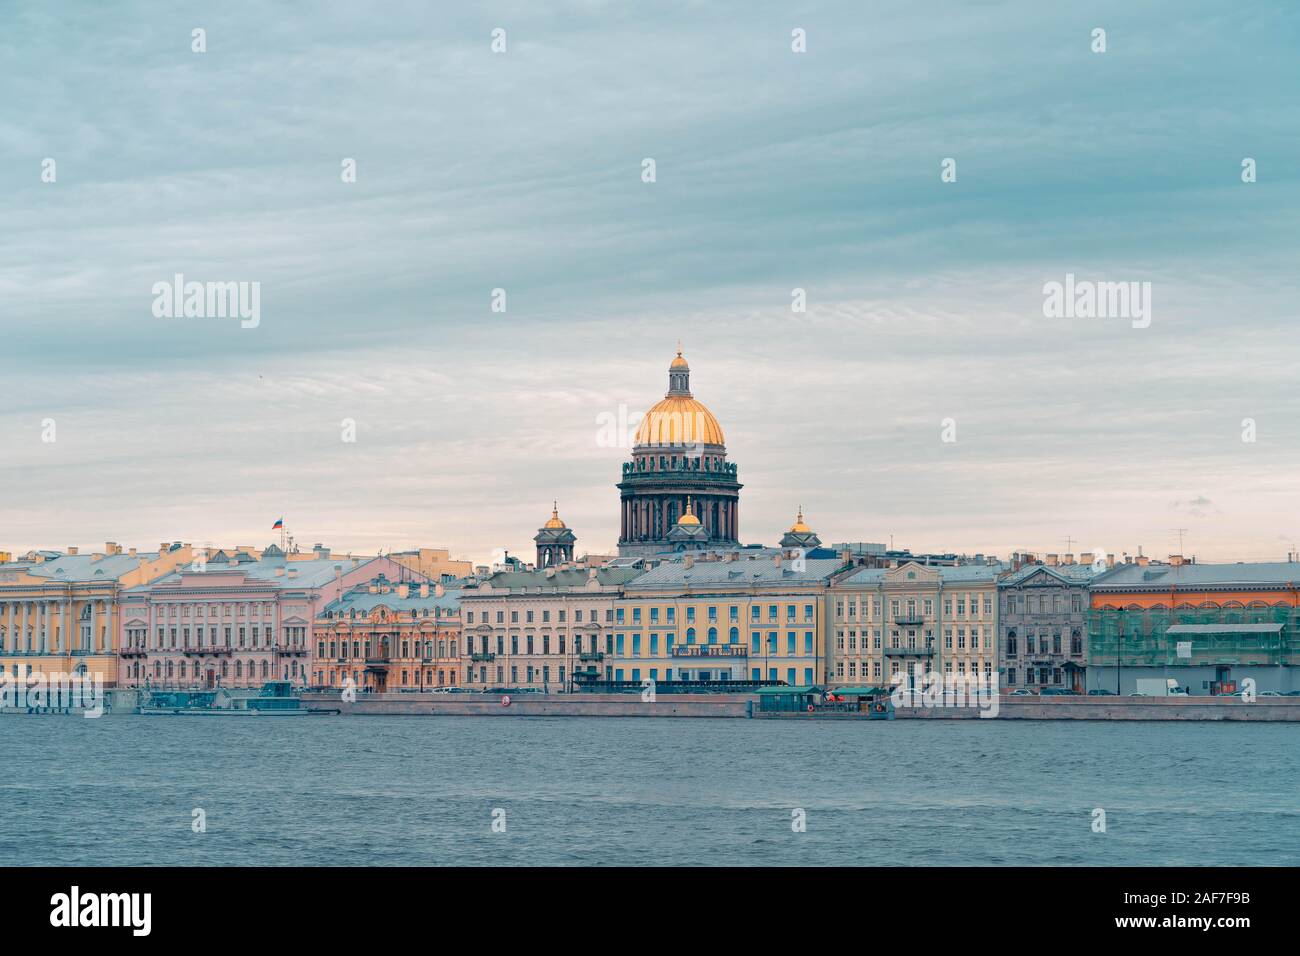 Panorama auf Saint Petersburg Haupt Anblick Isaaks-kathedrale. Sicht von der Newa. Touristische und Sightseeing Konzept. Der wunderschöne St. Petersbur Stockfoto